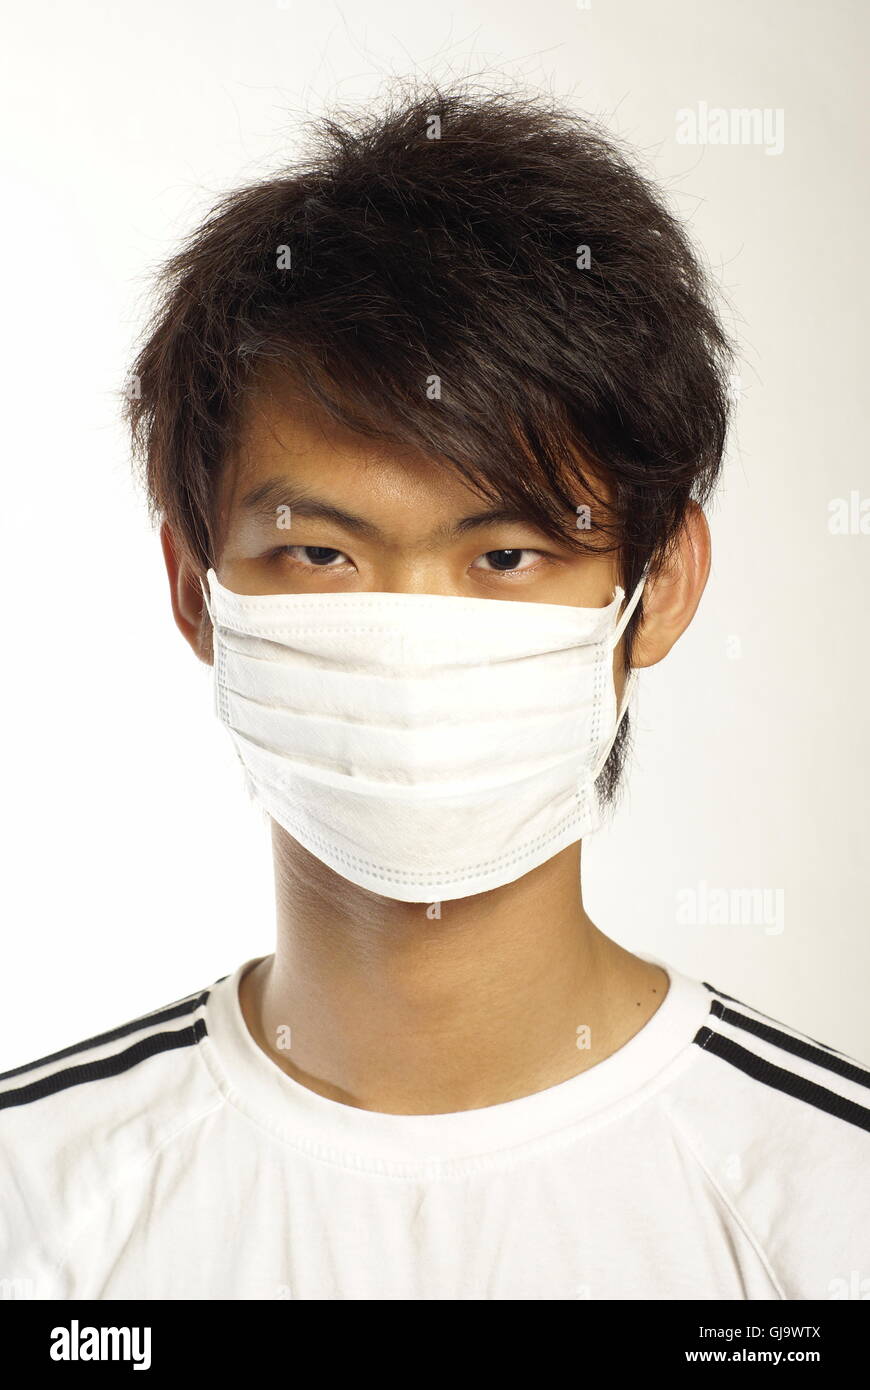 Asiatischer Mann in OP-Maske Stockfoto